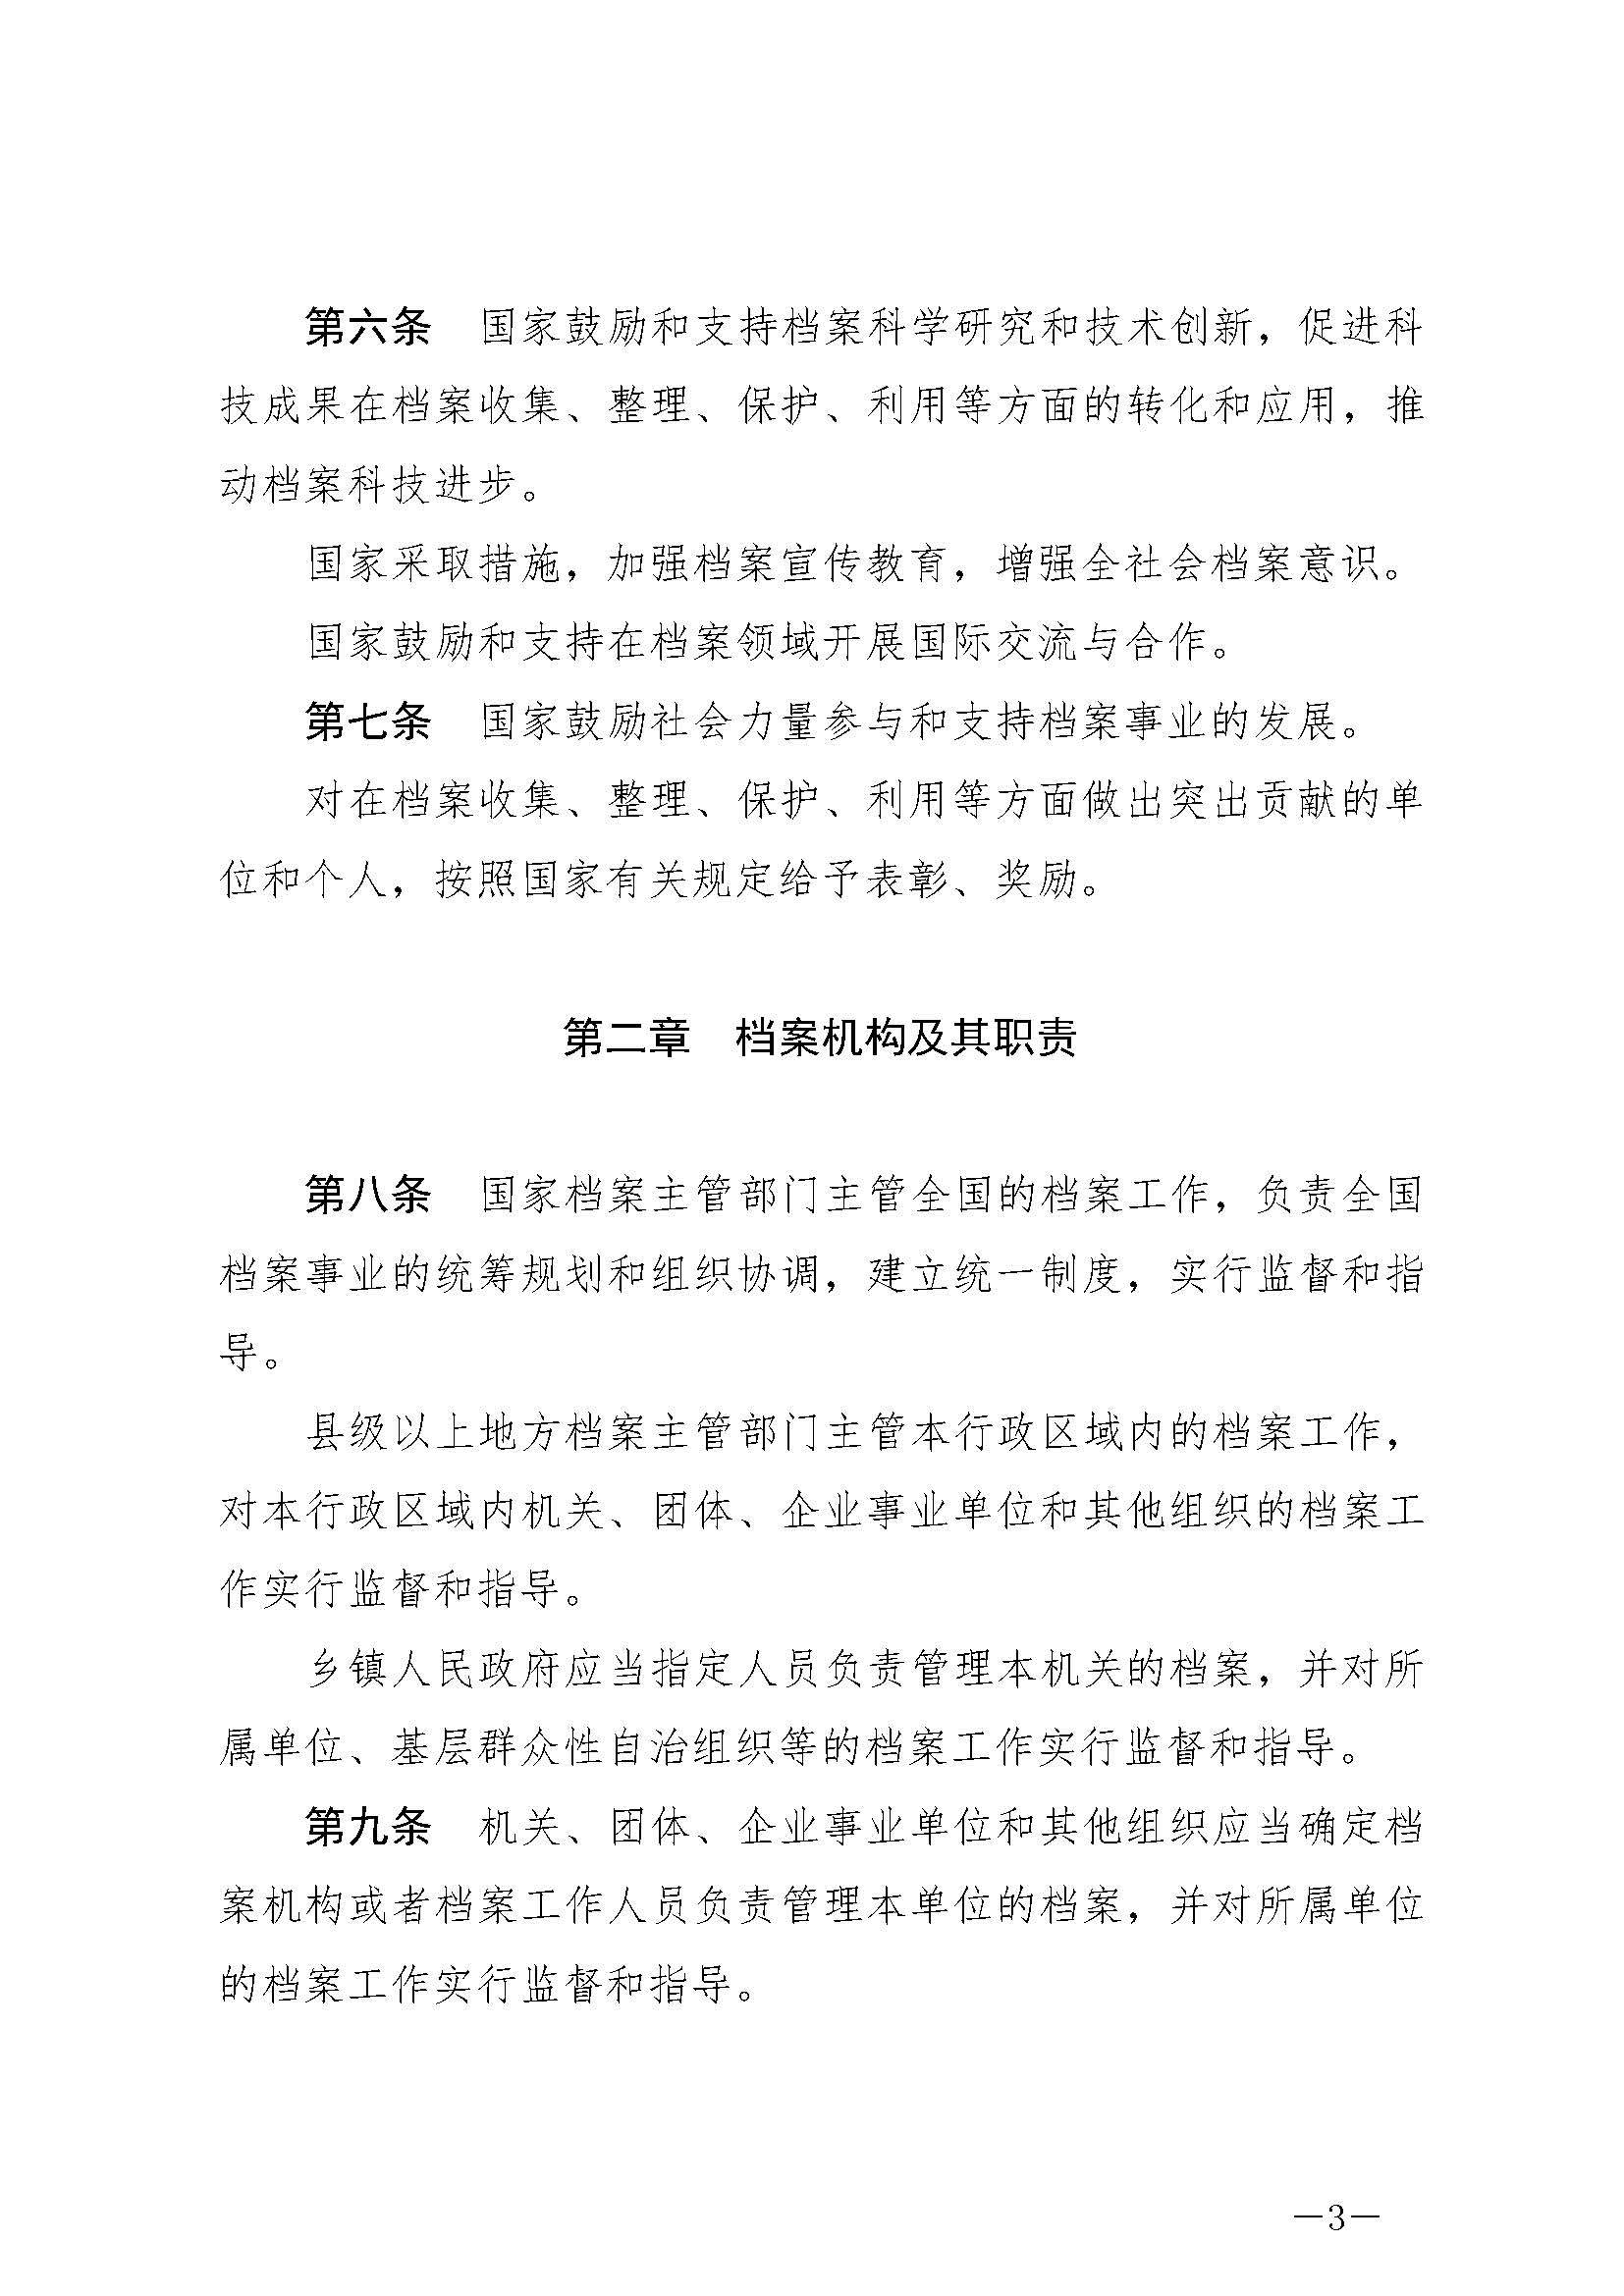 《中华人民共和国档案法》_页面_03.jpg